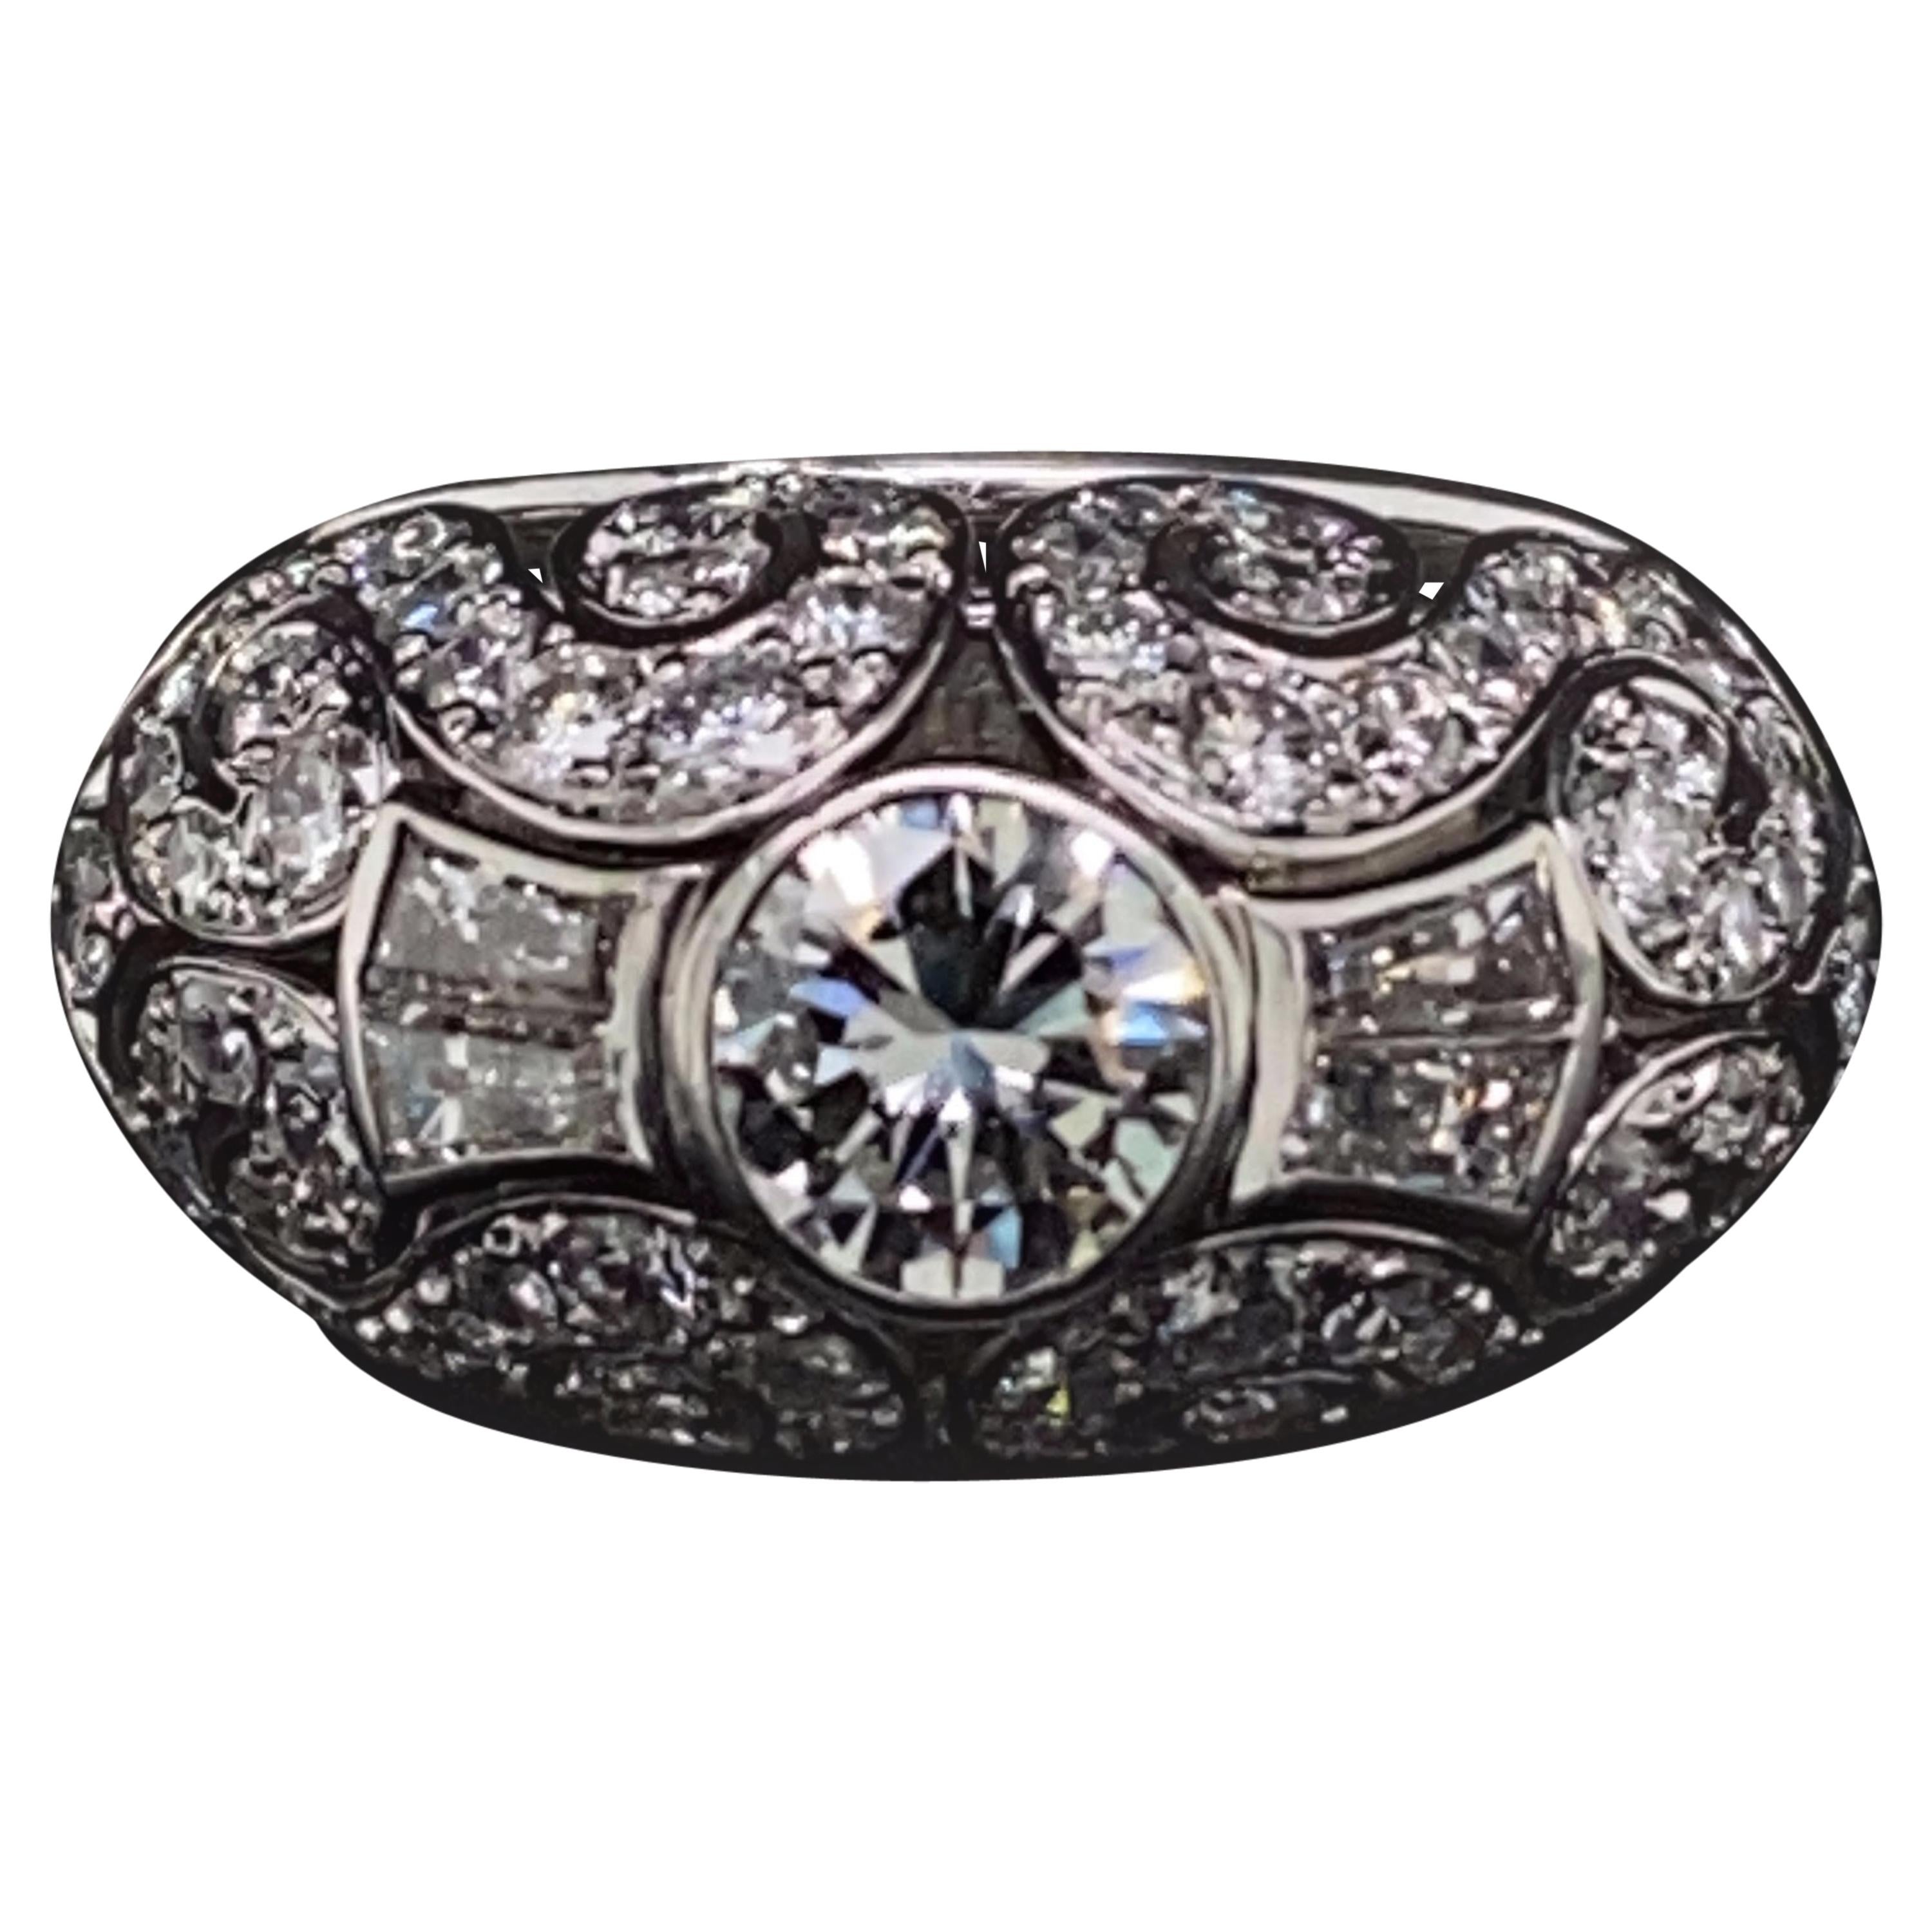 Patek Philippe Platinum Diamond Cocktail Ring